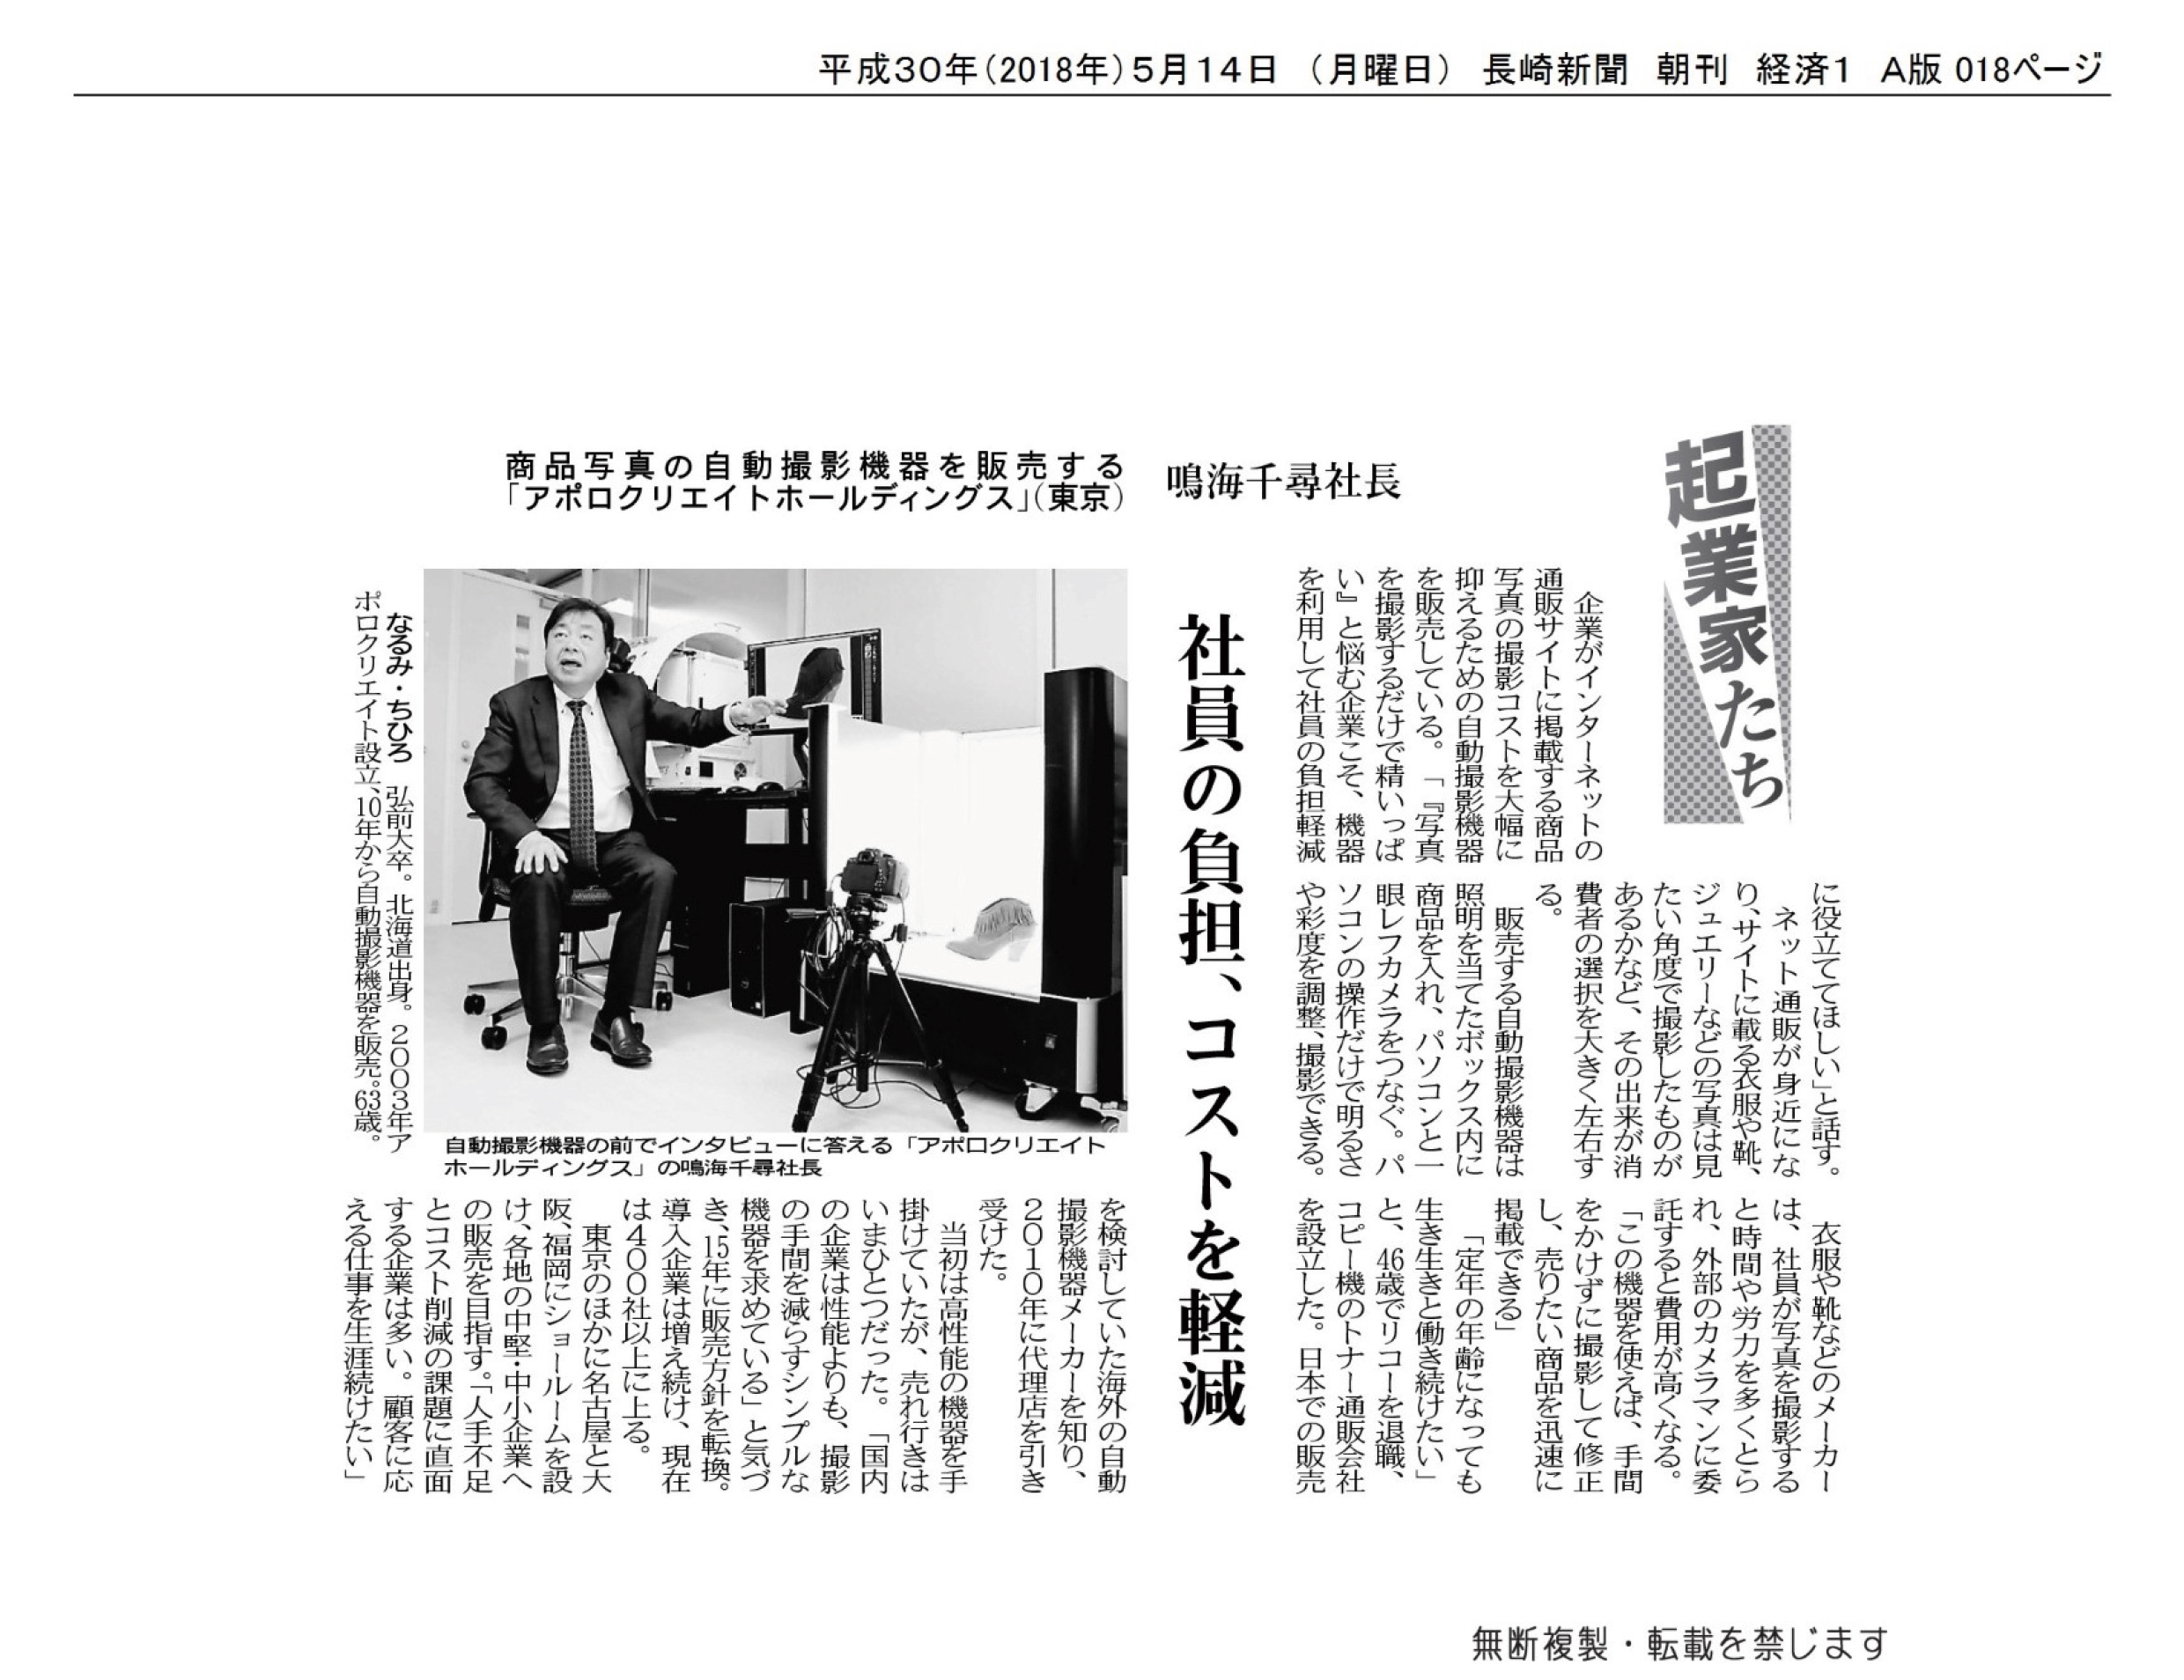 長崎新聞に弊社フォトオートメーションについて掲載されました。